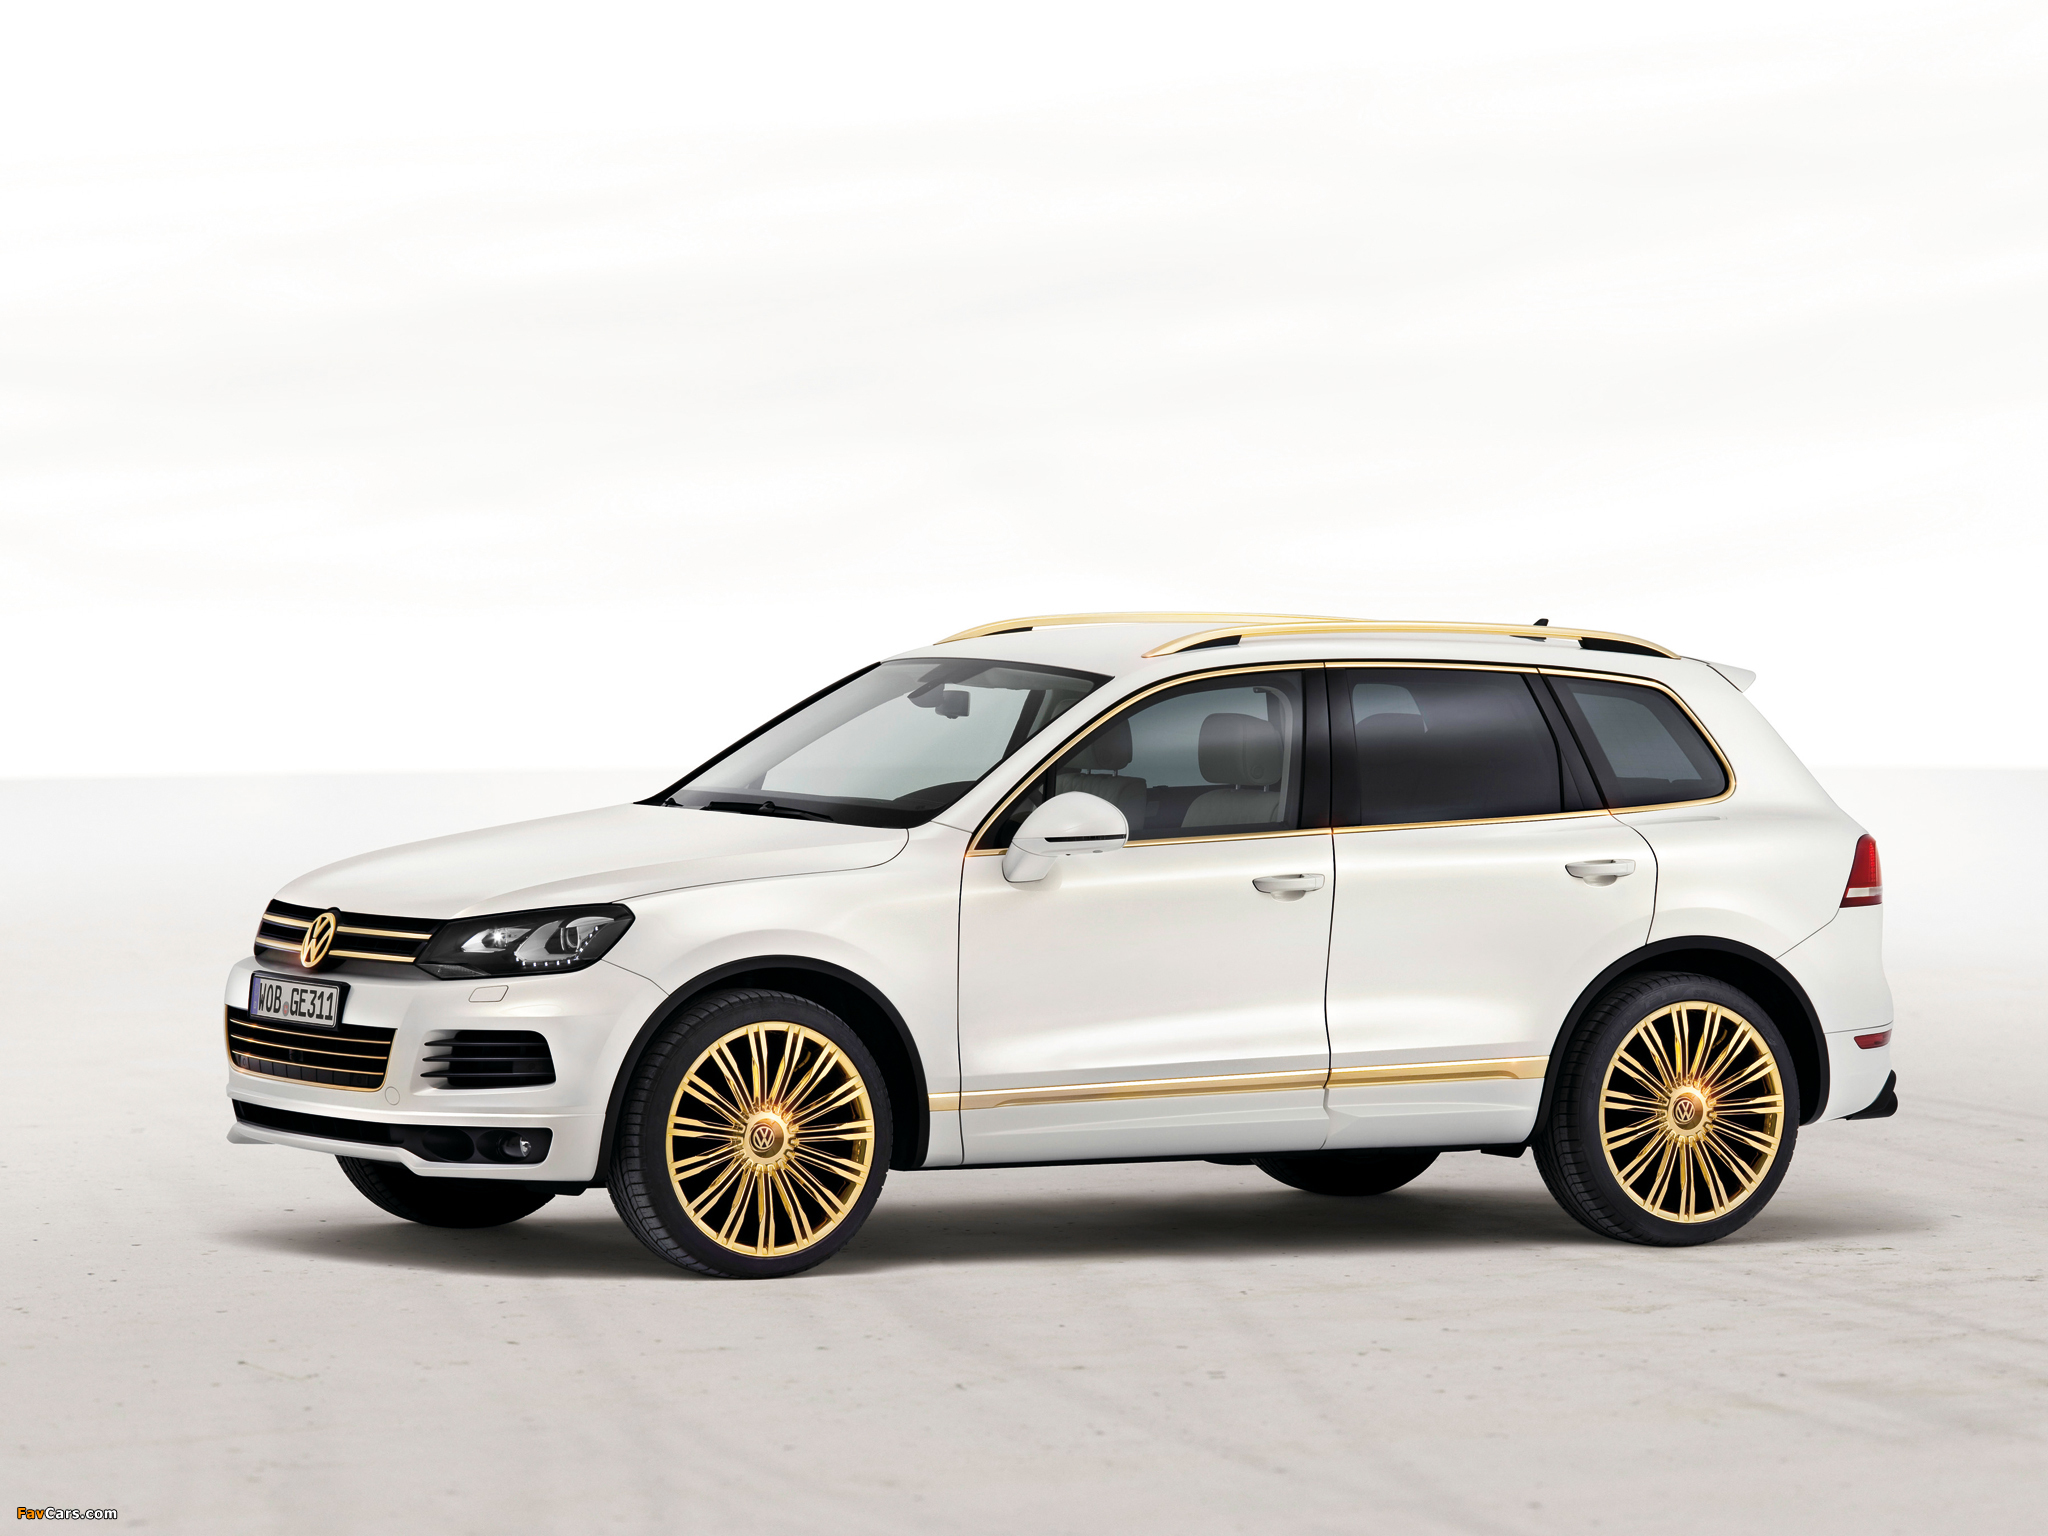 Volkswagen Touareg V8 TDI Gold Edition Concept 2011 photos (2048 x 1536)